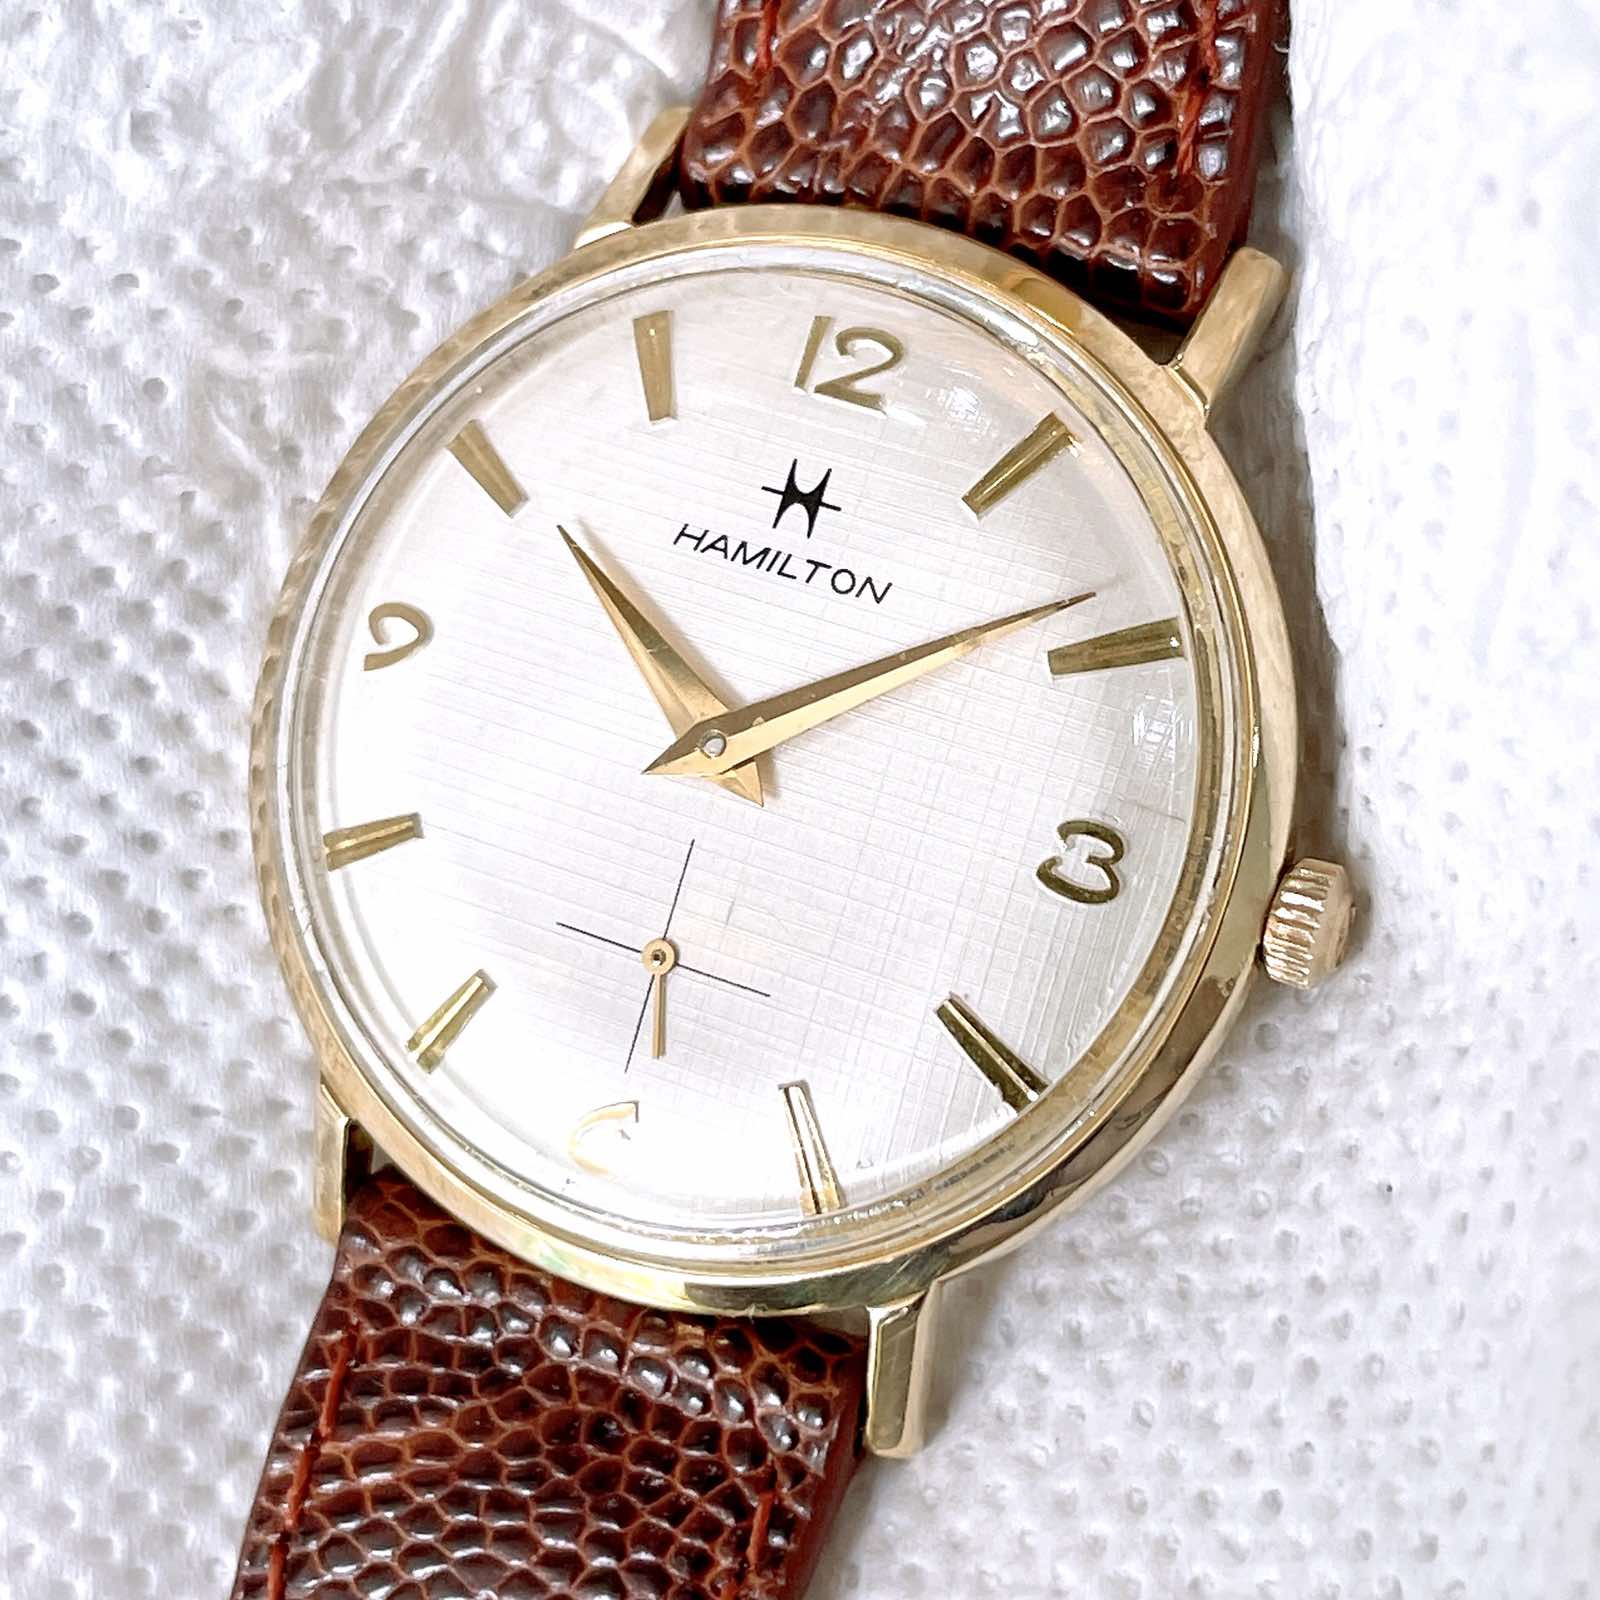 Đồng hồ cổ Hamilton lên dây vàng đúc 14k chính hãng thụy Sĩ